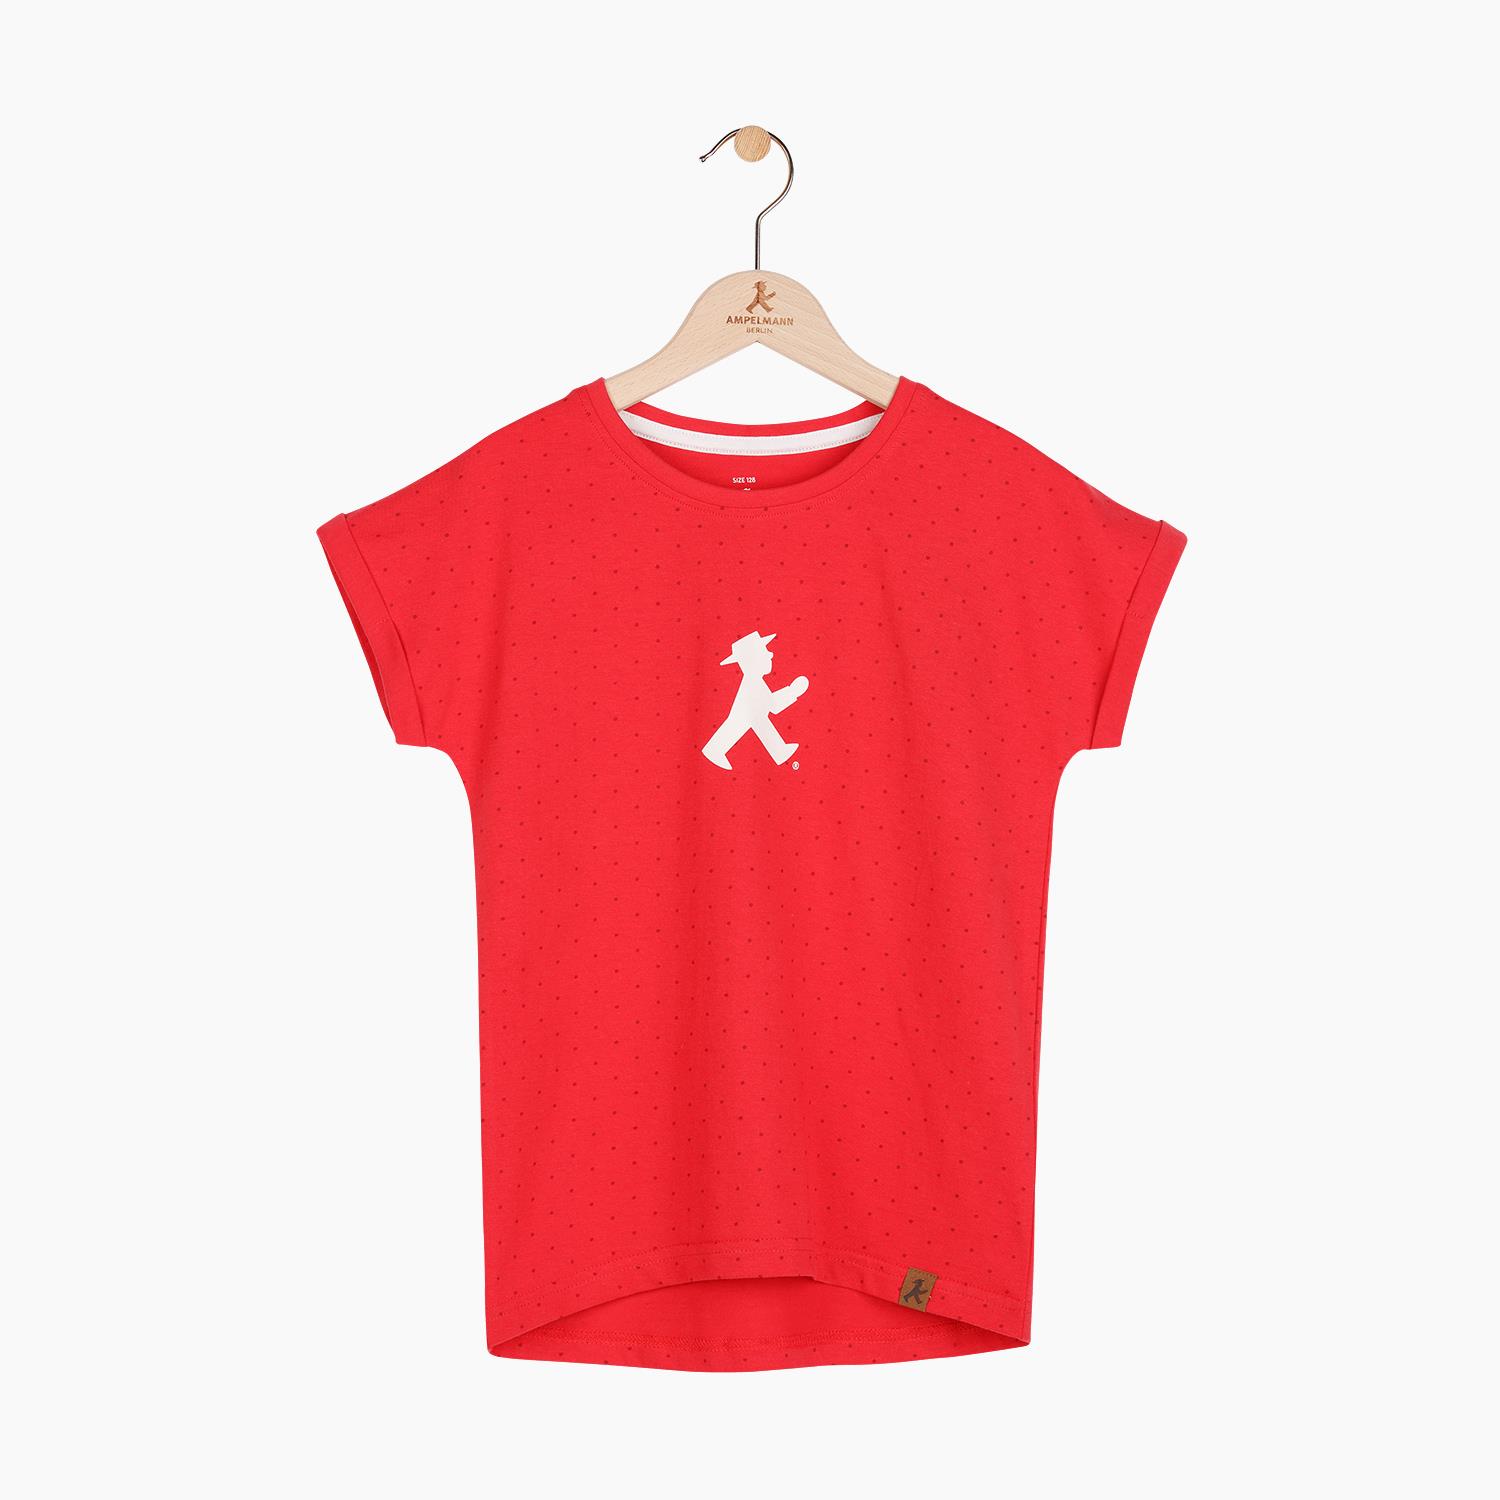 HERZCHEN 92/ Kinder T-Shirt